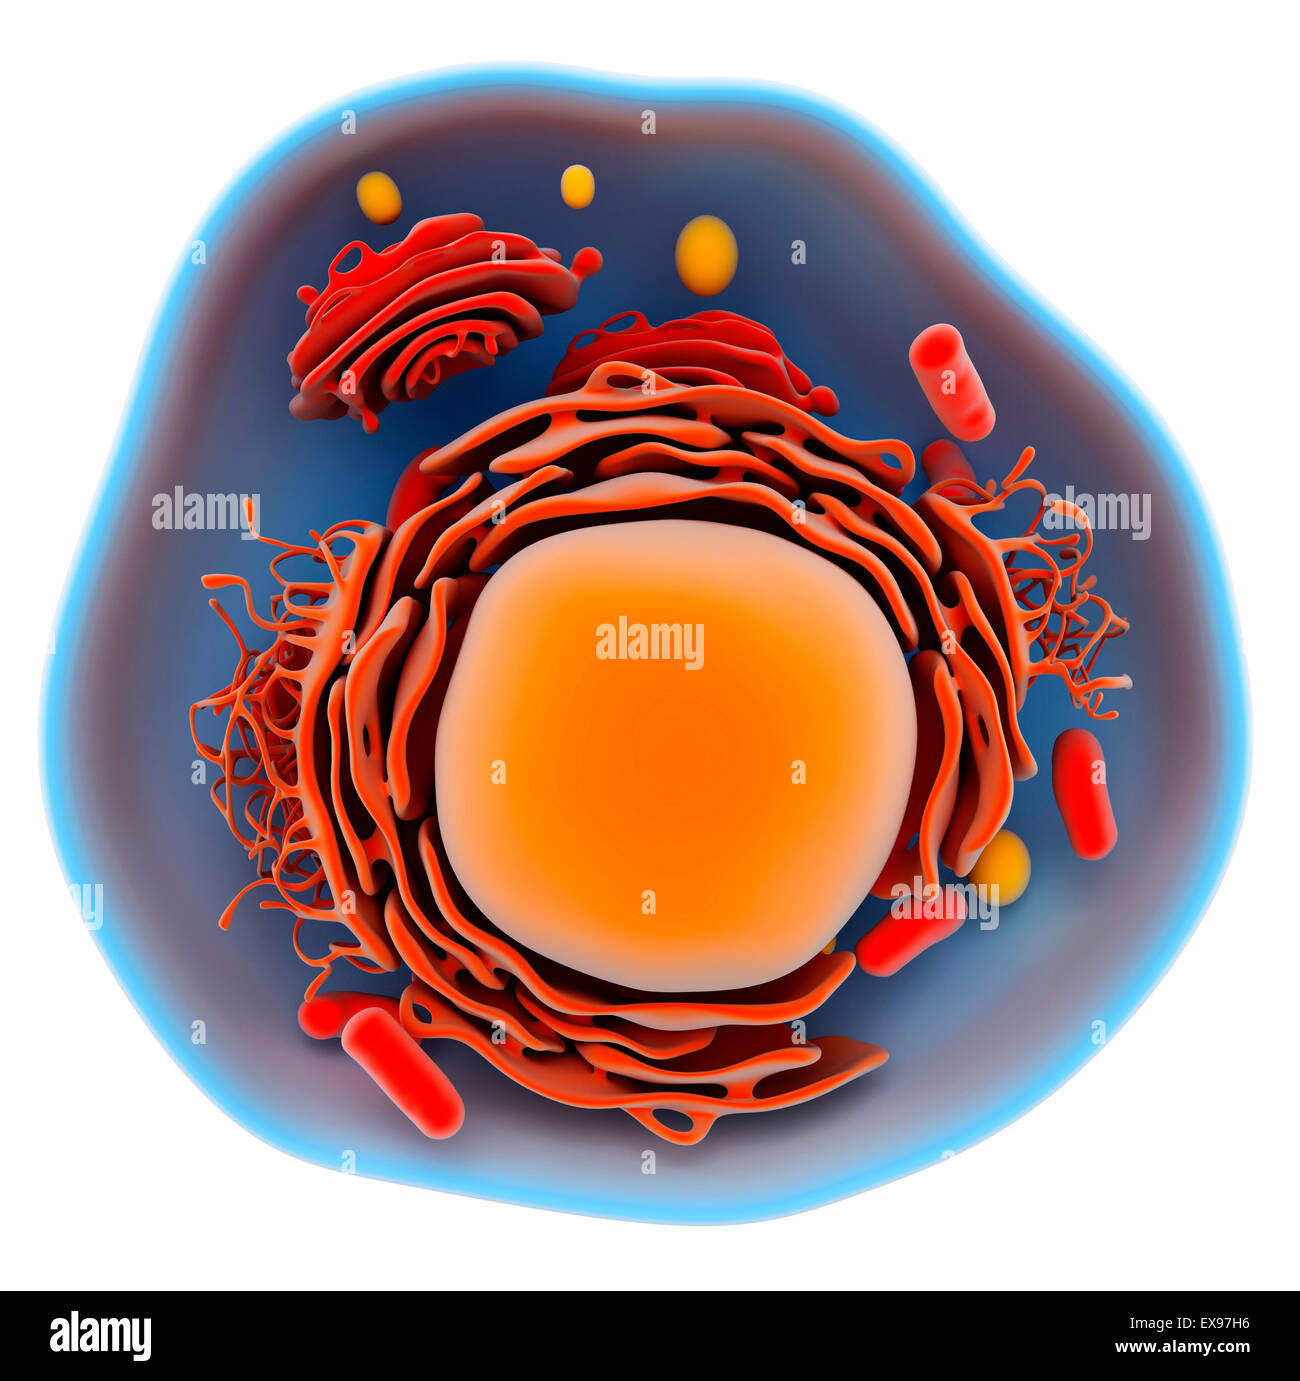 Ilustración de una célula eucariota. Foto de stock